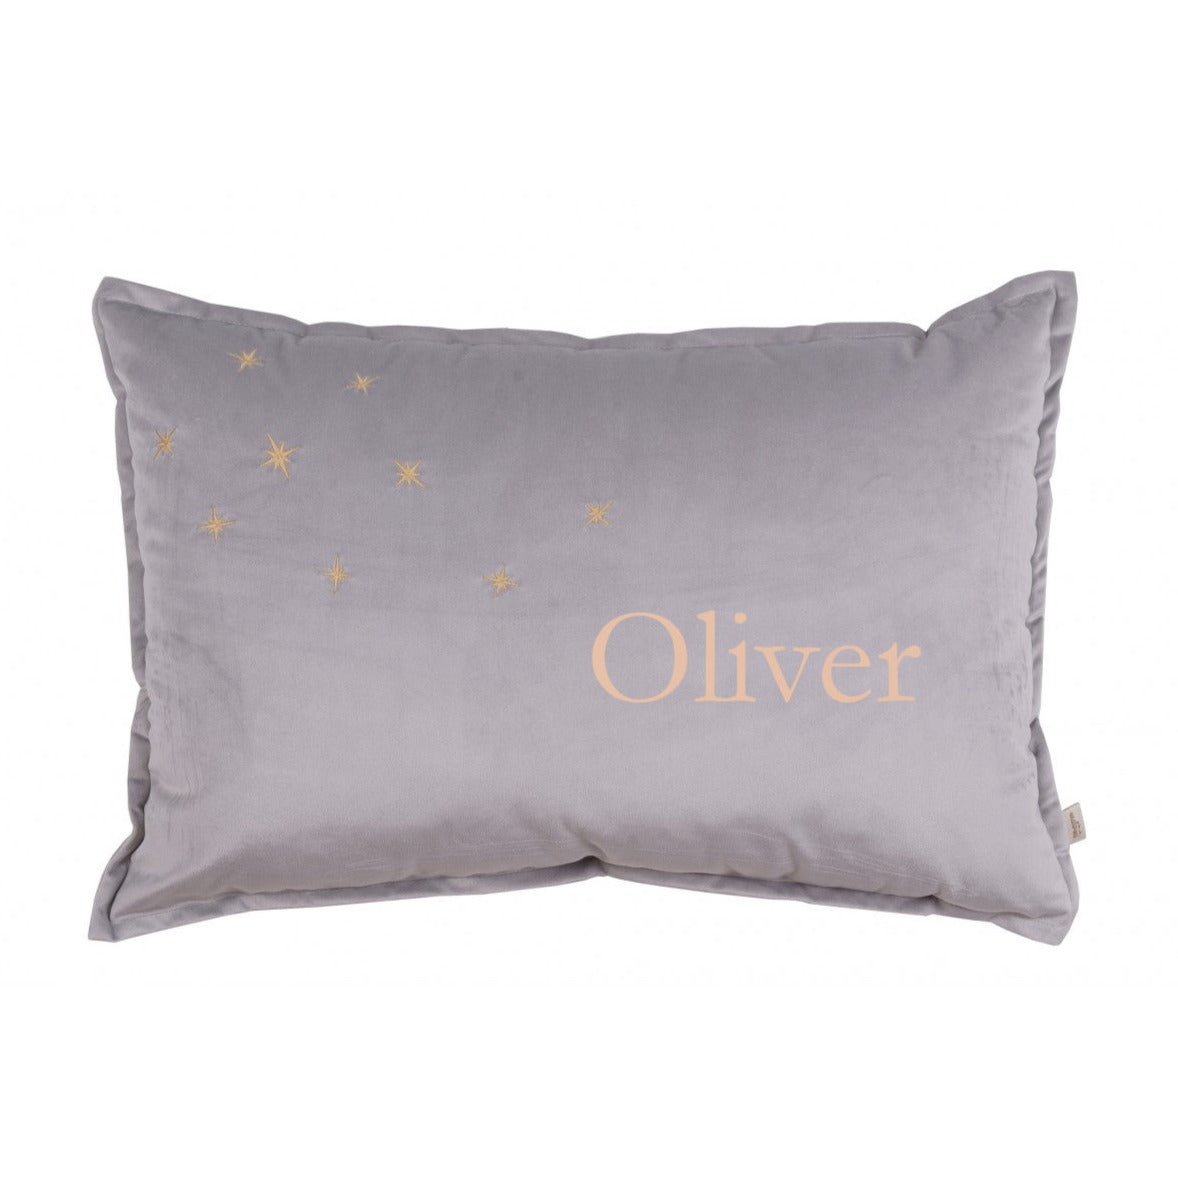 Personalised Luxury Velvet Cushion - Grey